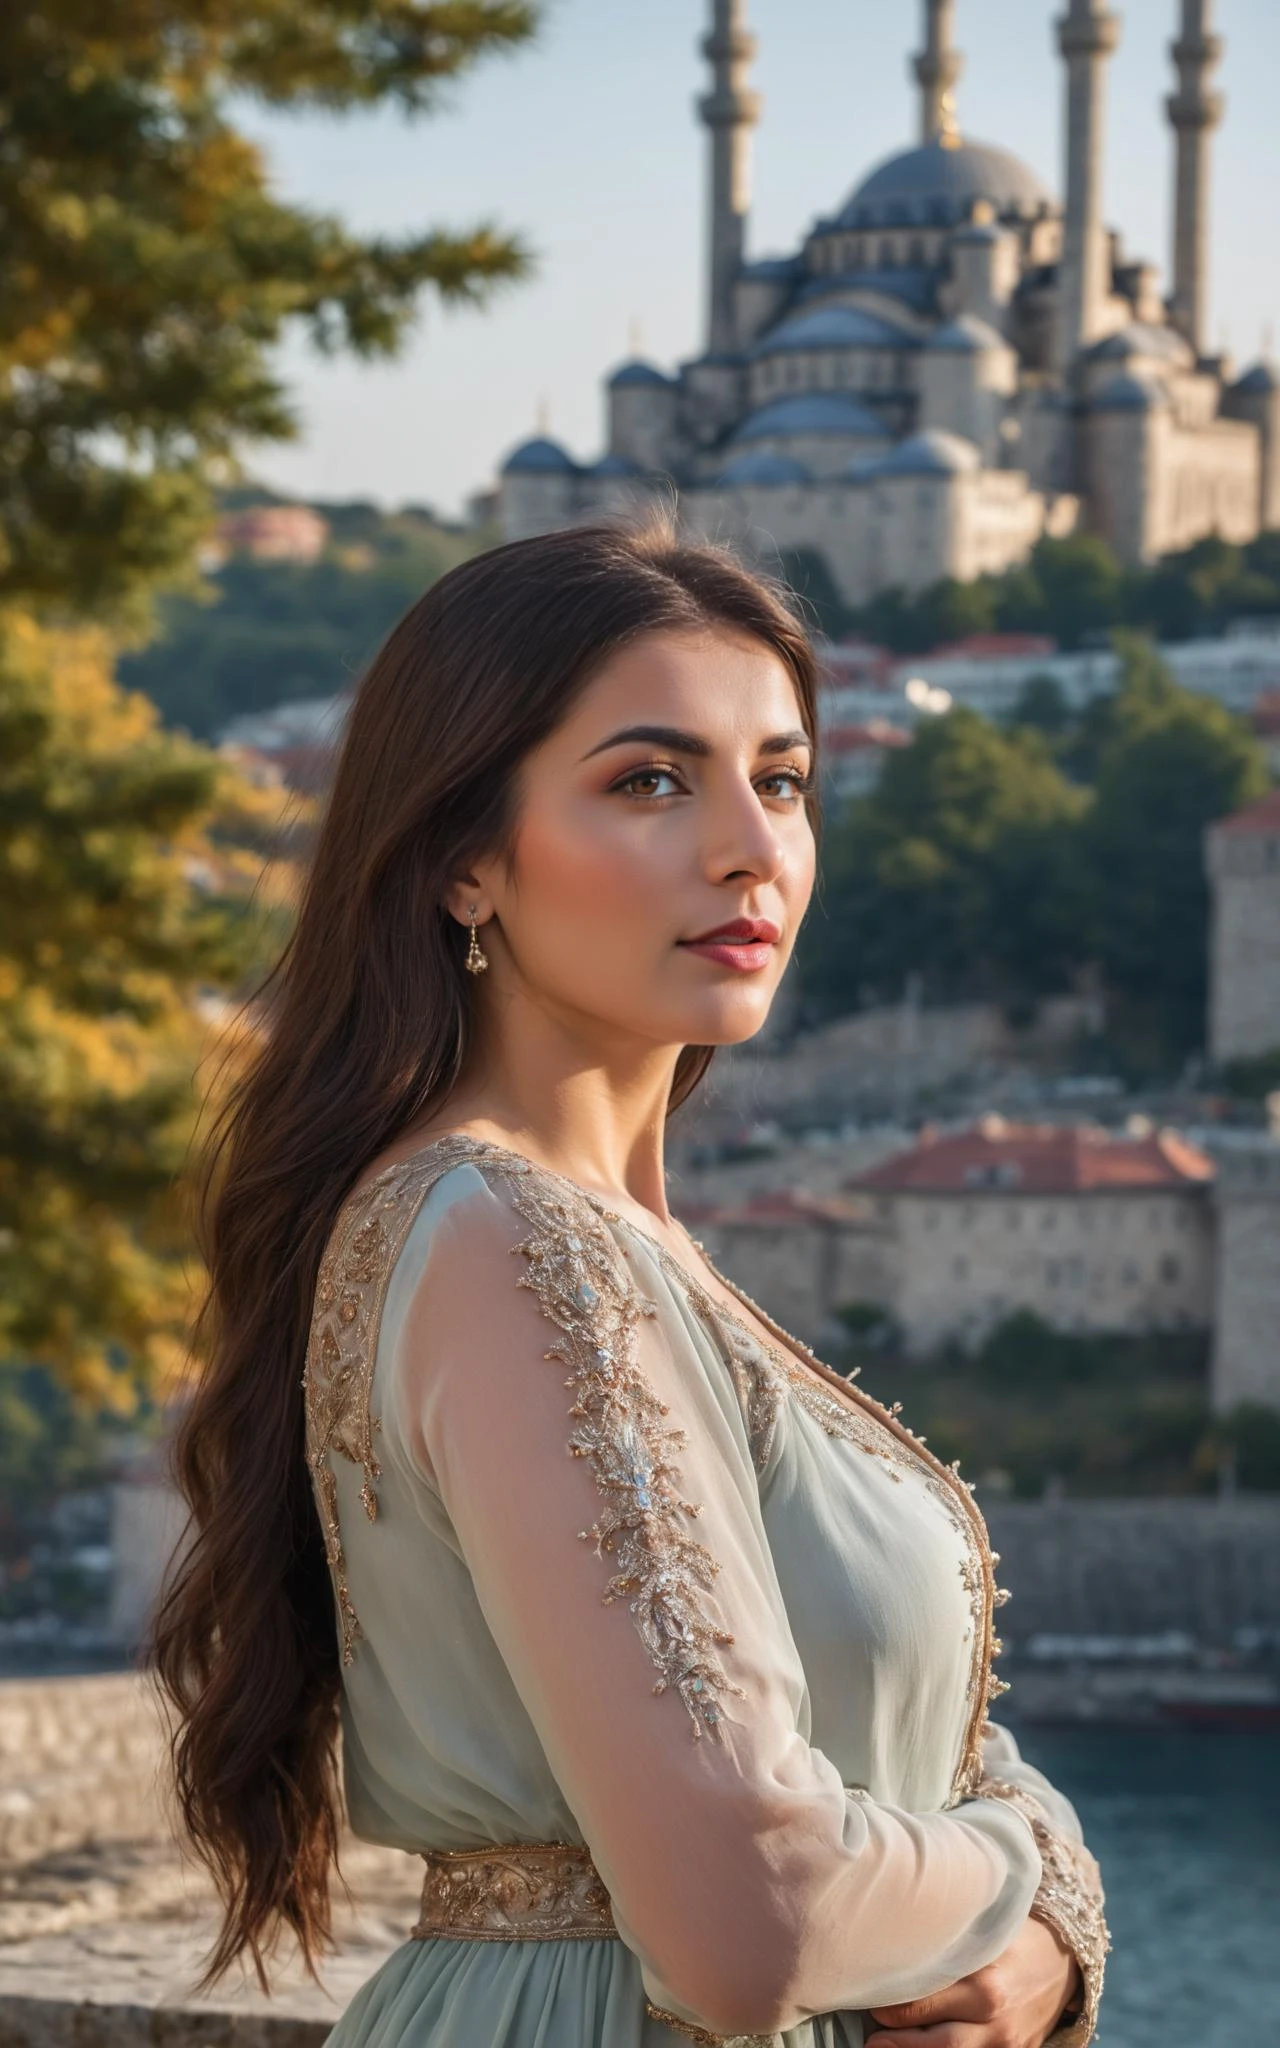 красивая турчанка стоит возле стамбульского замка, боке, очень подробный